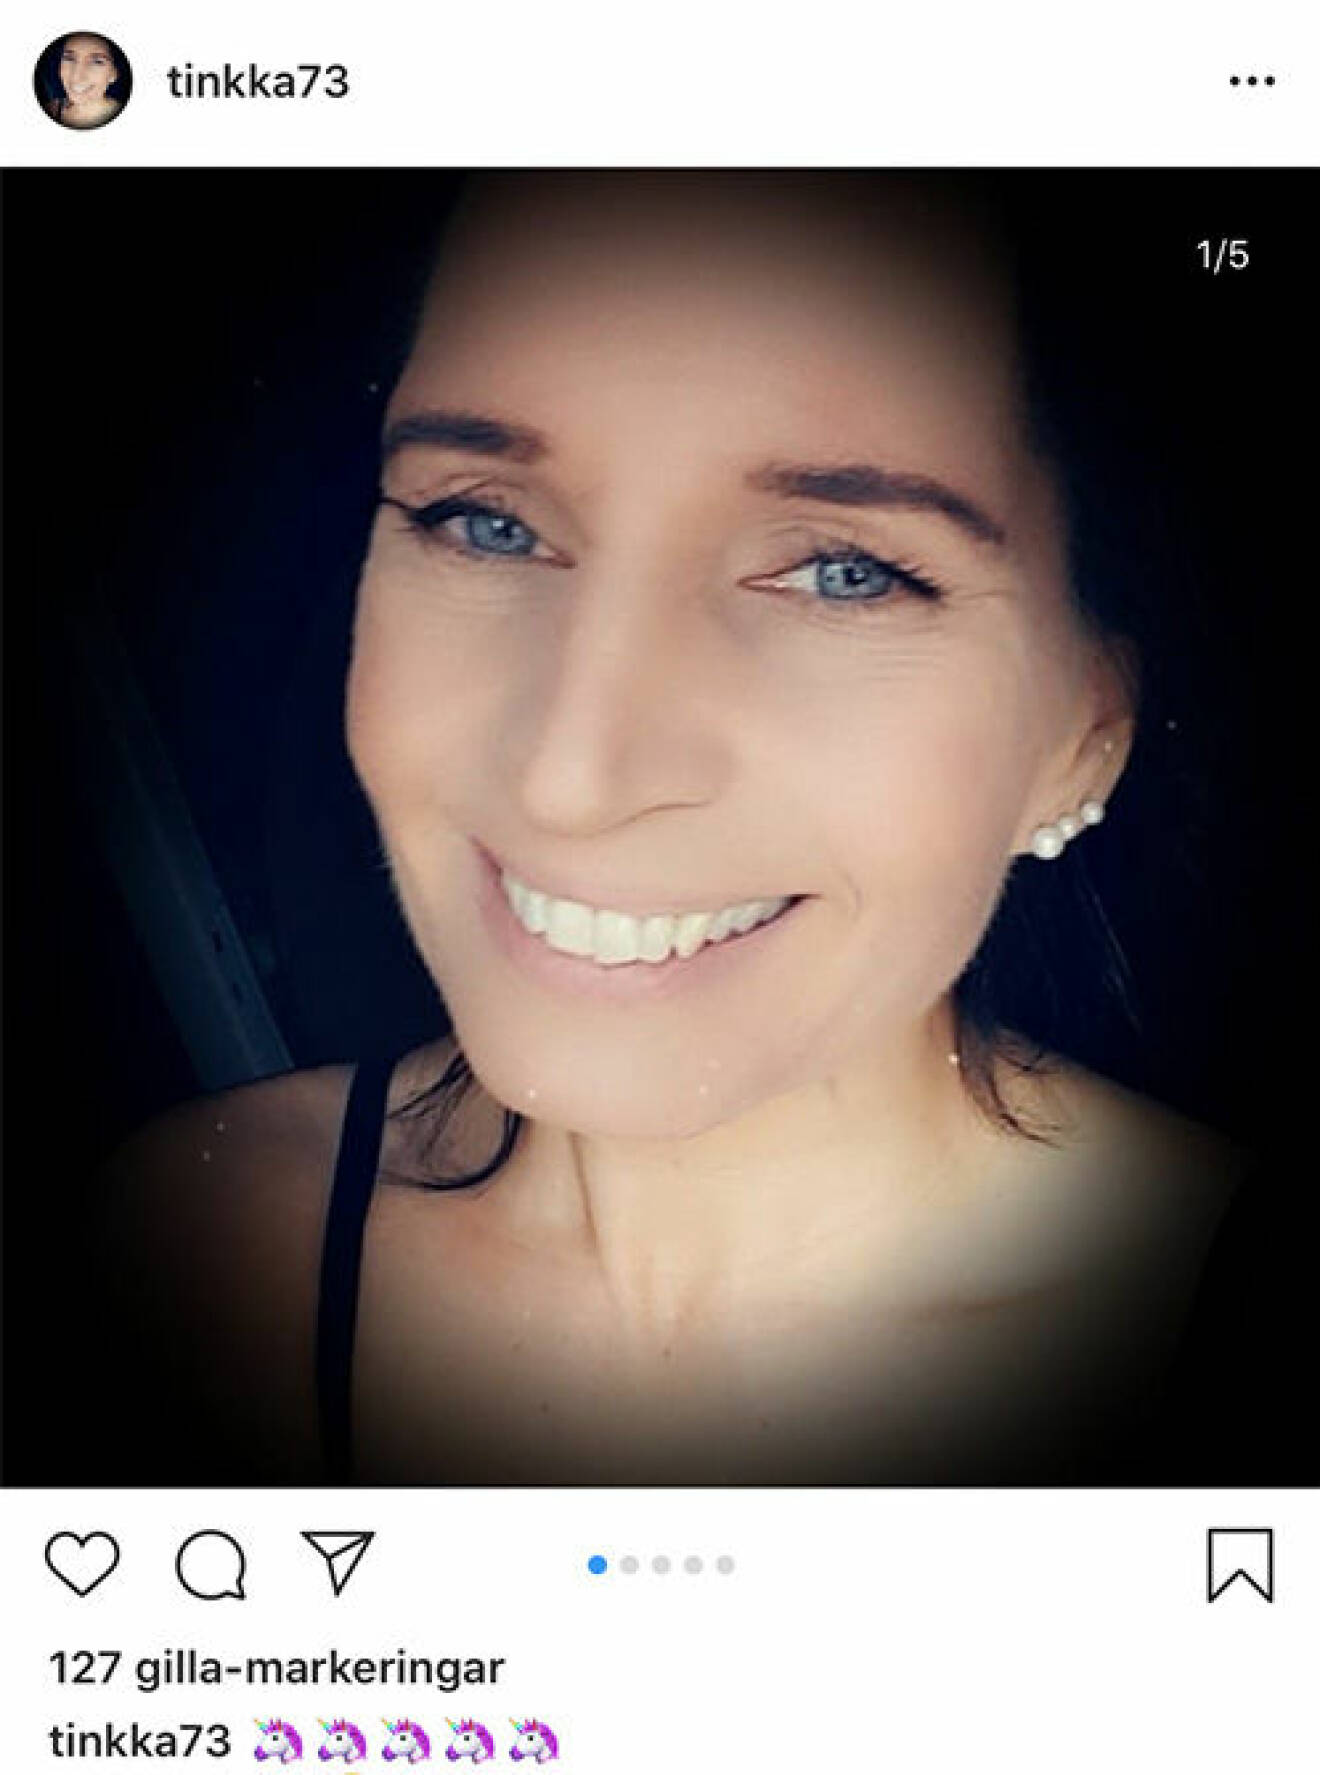 Tina Johansson från Familjen annorlunda på en bild från Instagram